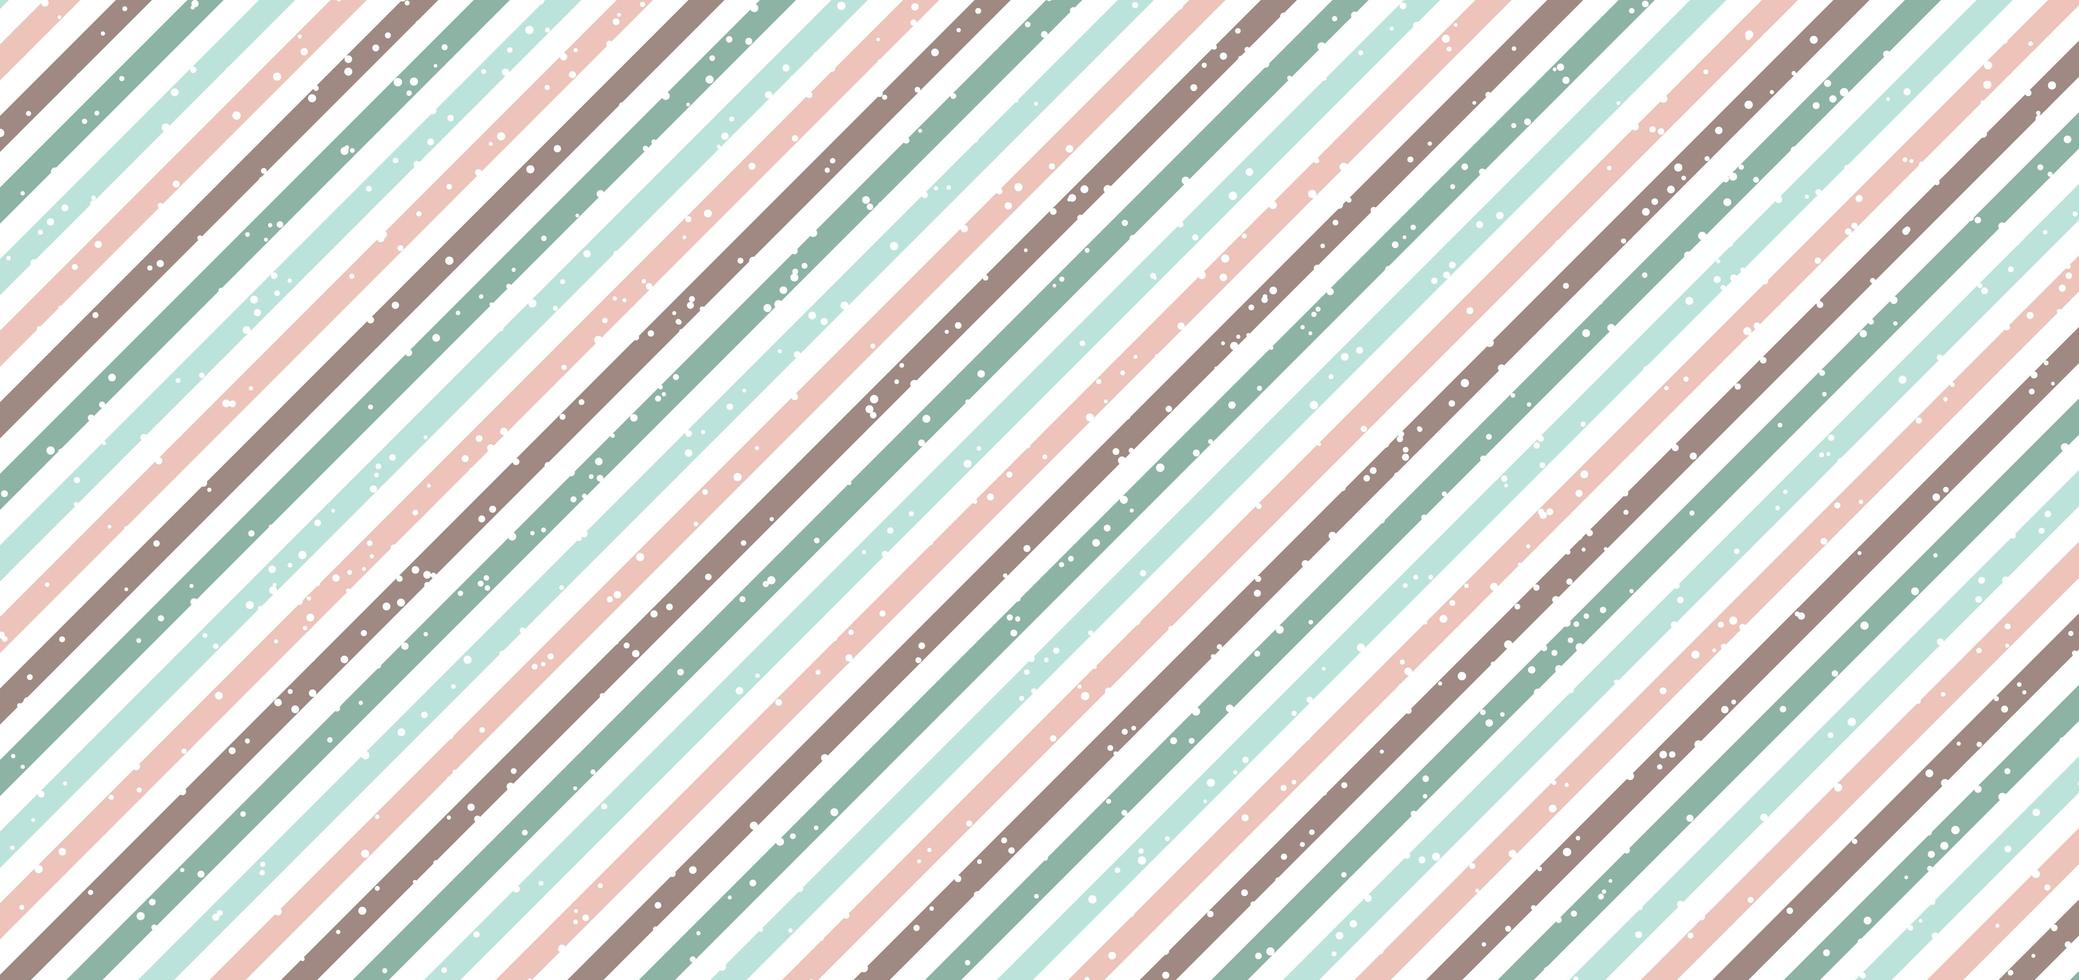 abstrakt klassisk retrostil diagonala ränder pastellfärgad bakgrund med vita prickar sprids vektor